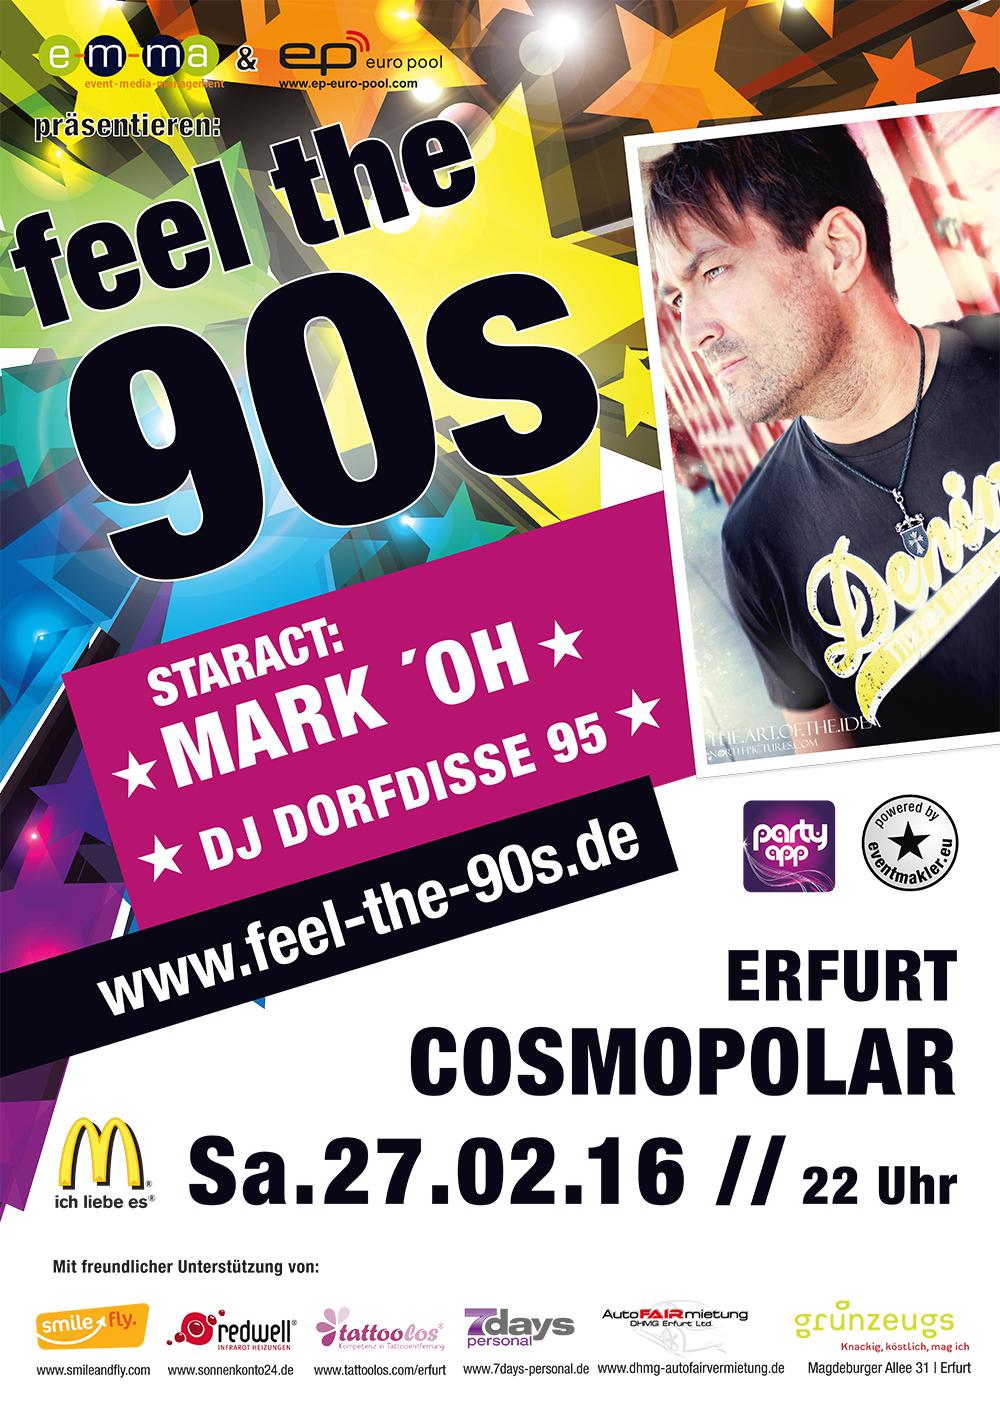 FEEL THE 90s - Star-Act: MARK ´OH & Dorfdisse 95 I Thüringens größte 90er Partyreihe I 27.02. Cosmopolar Erfurt